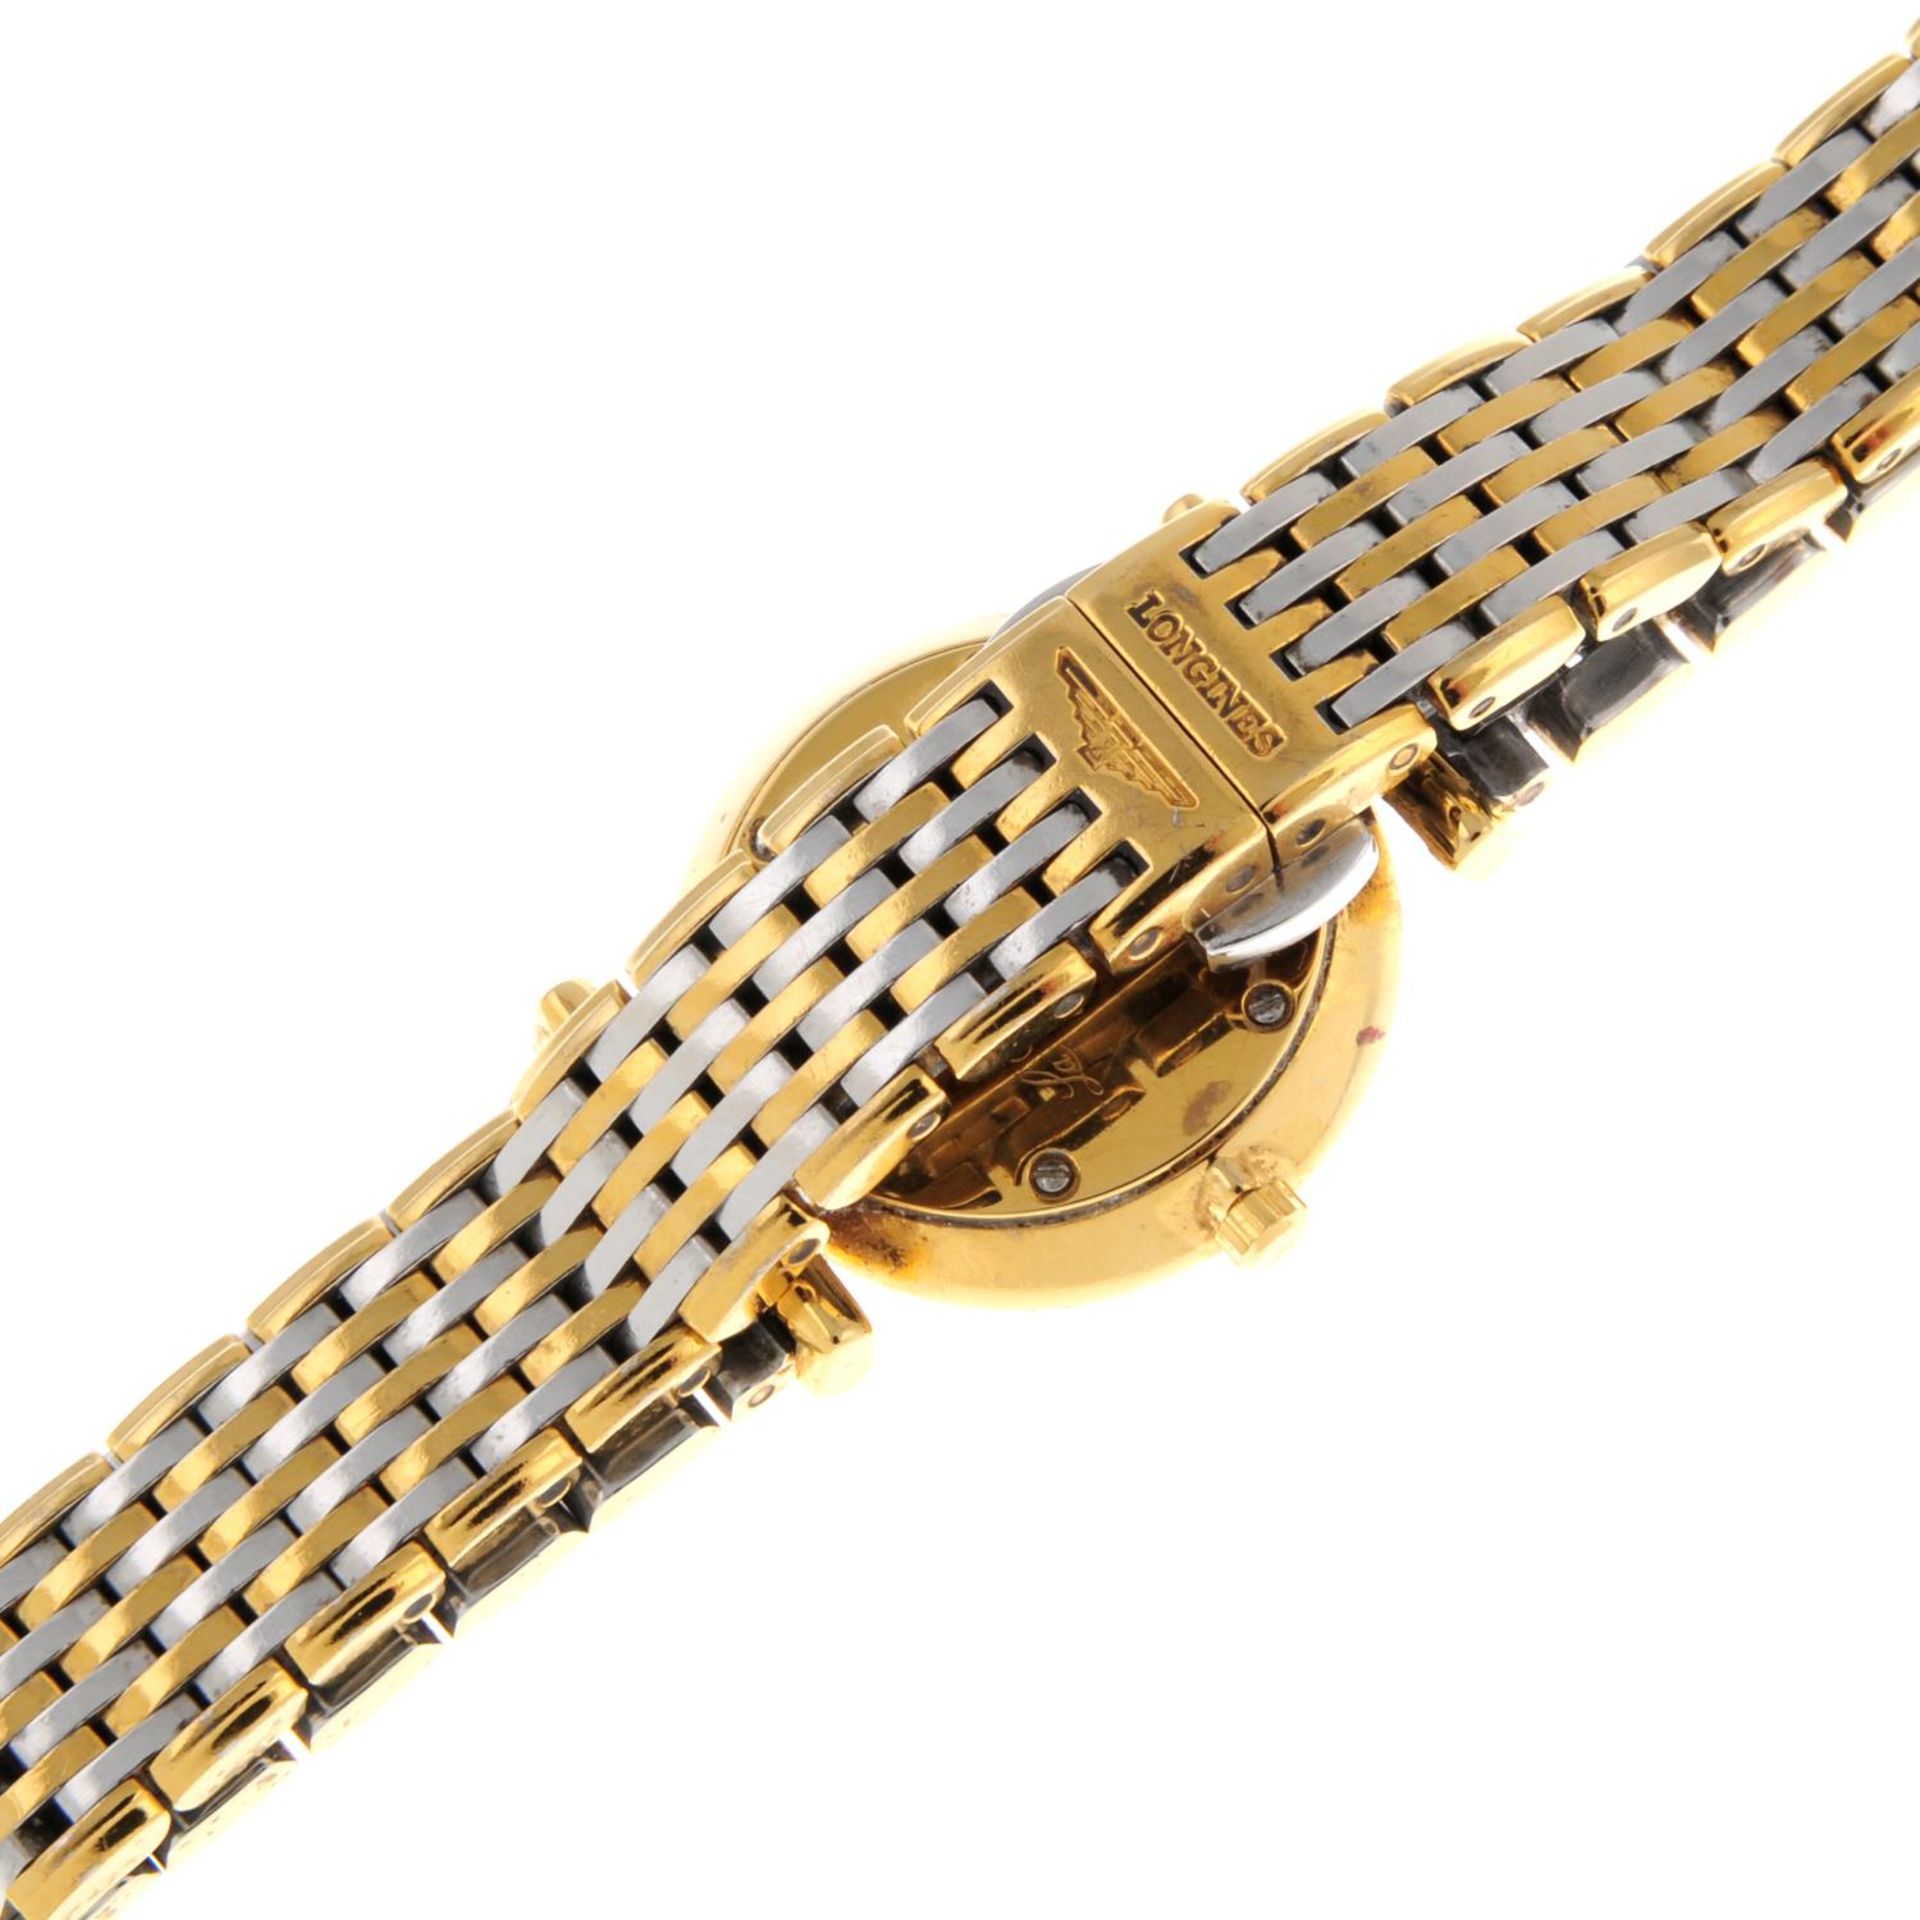 LONGINES - a La Grand Classique bracelet watch. - Image 2 of 4